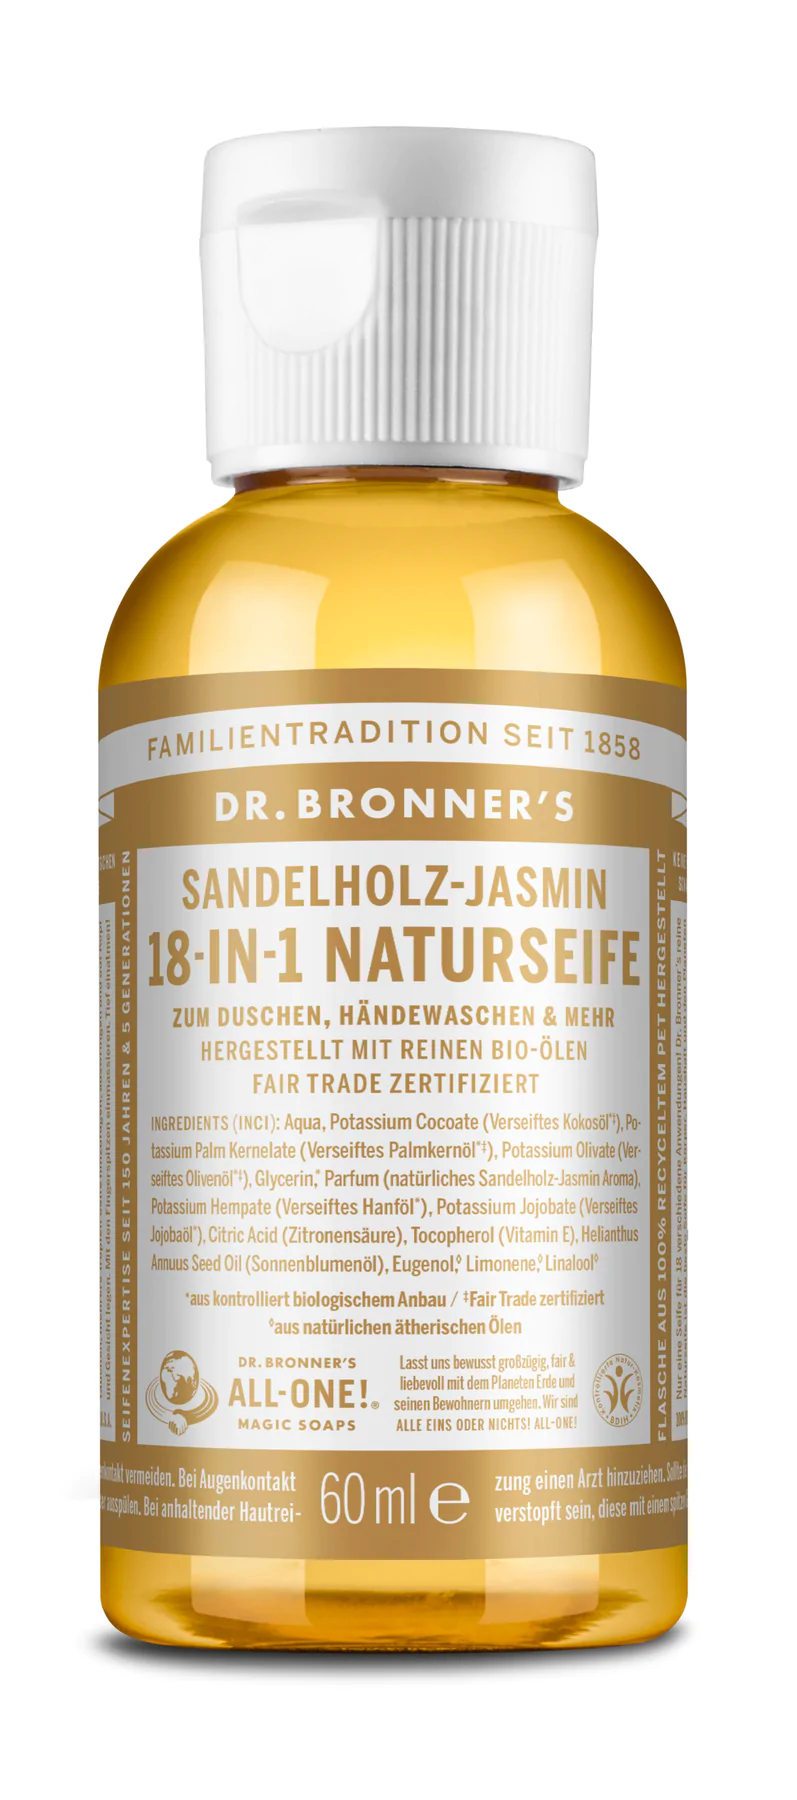 Dr. Bronner 18-IN-1 NATURSEIFE  Sandelholz-Jasmin 60ml